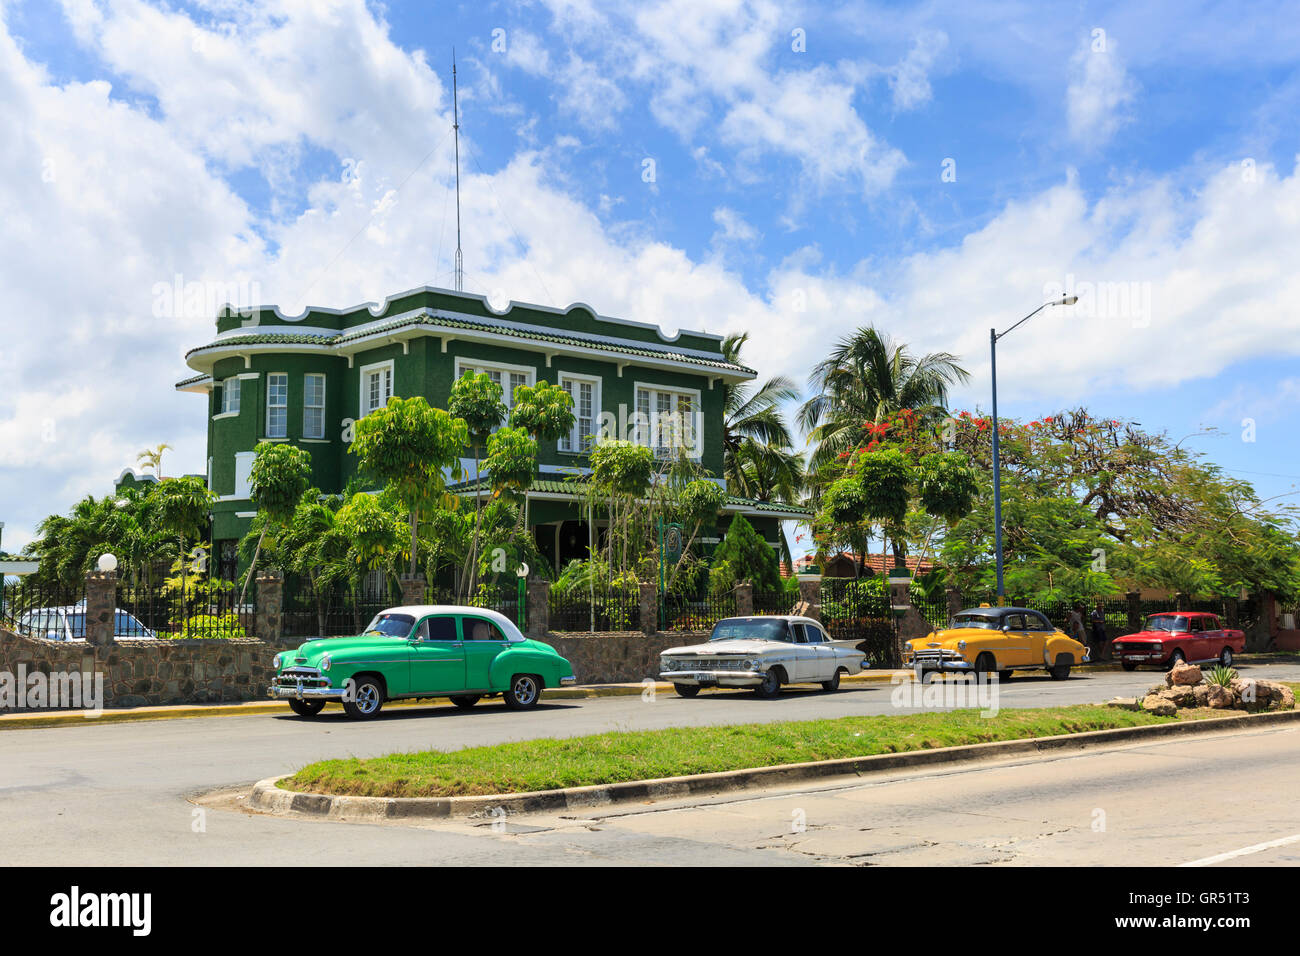 Hôtel Casa Verde avec classic voitures garées à l'extérieur de la région de Punta Gorda, Cienfuegos, Cuba Banque D'Images